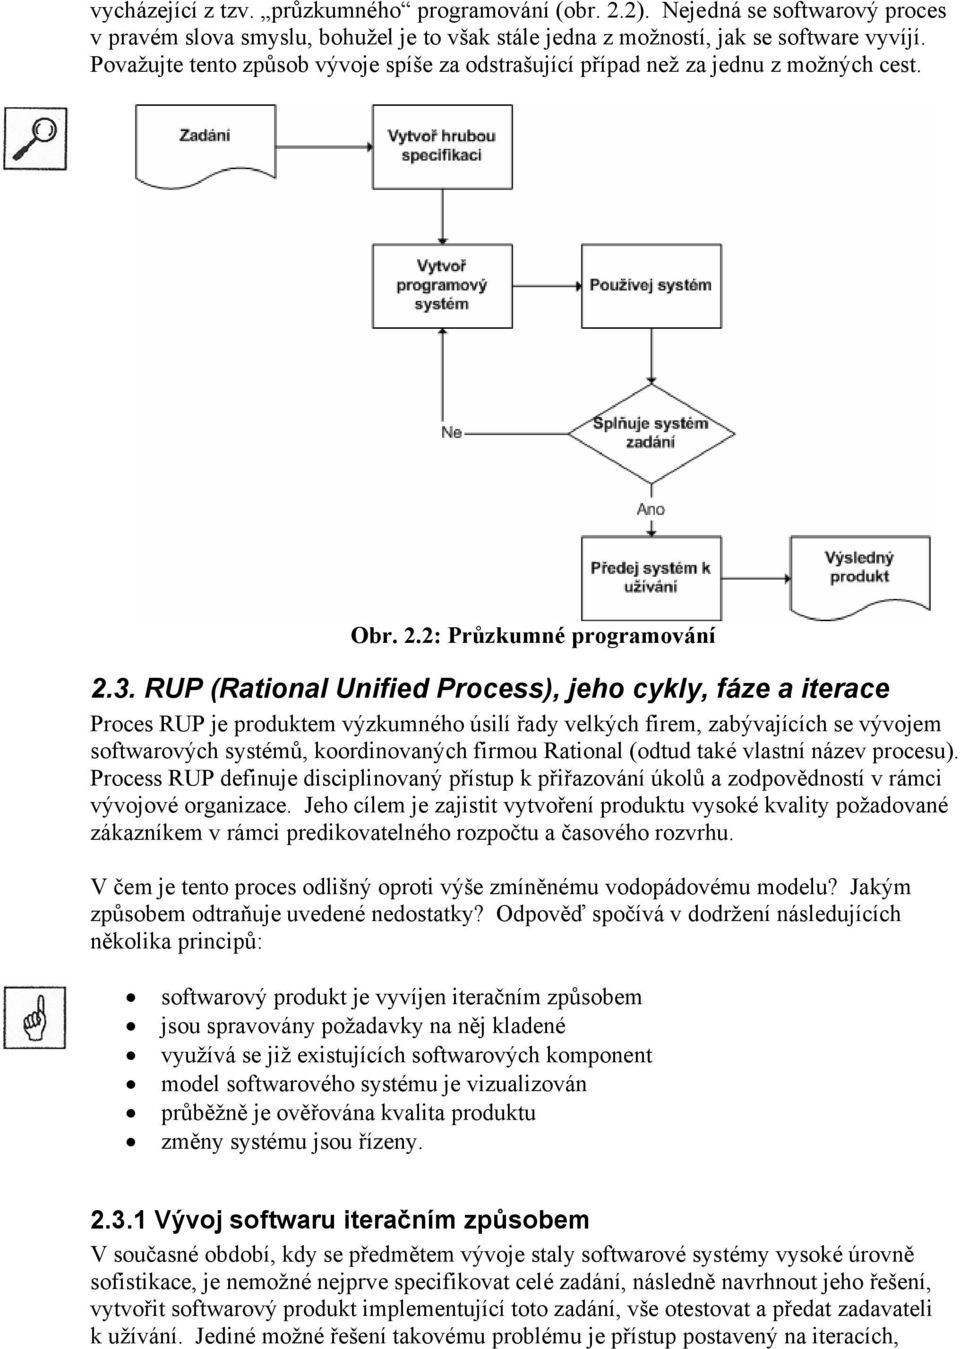 RUP (Rational Unified Process), jeho cykly, fáze a iterace Proces RUP je produktem výzkumného úsilí řady velkých firem, zabývajících se vývojem softwarových systémů, koordinovaných firmou Rational